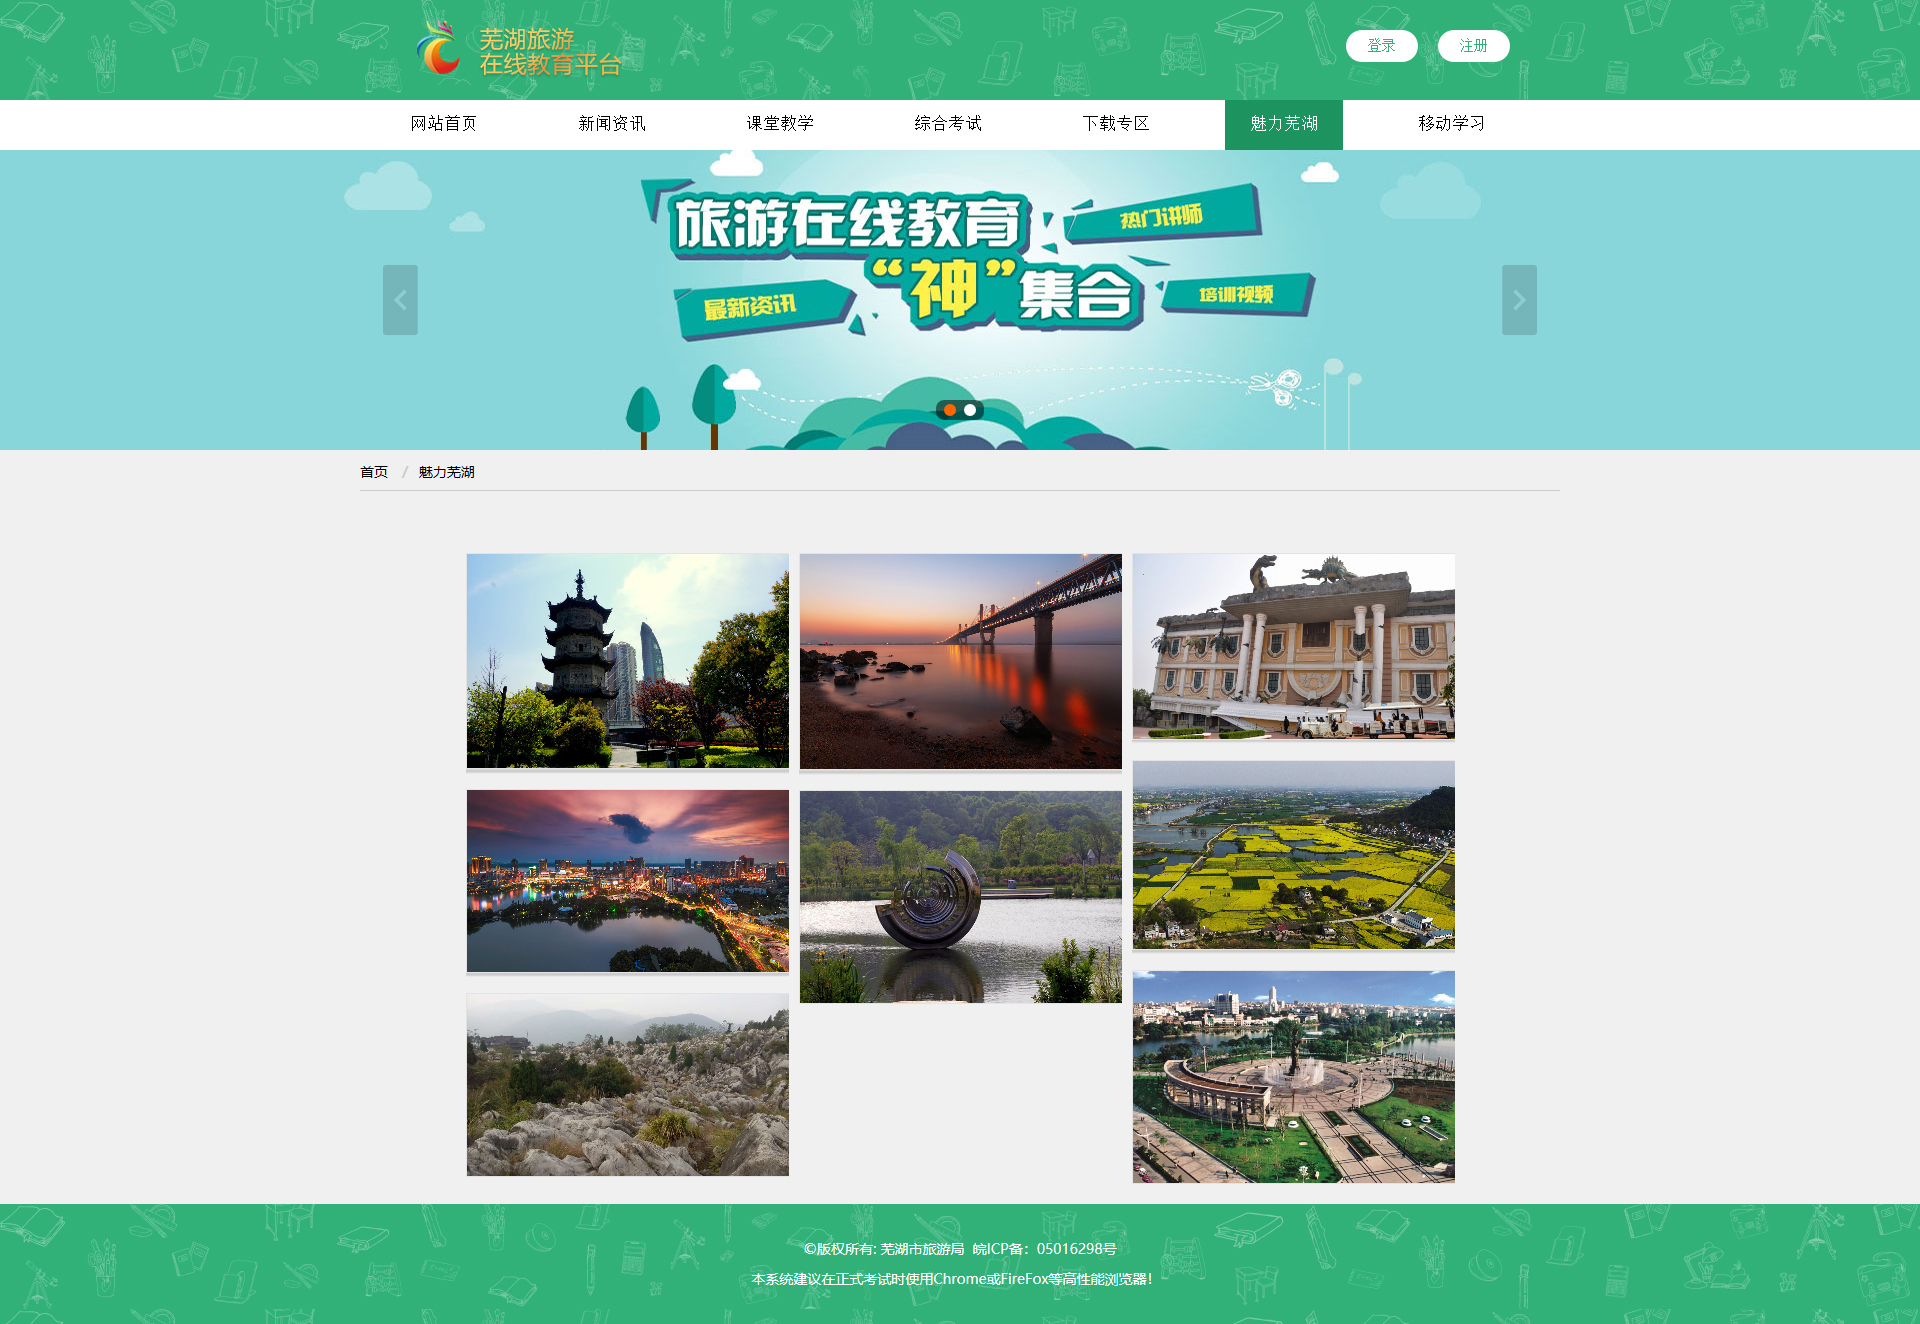 芜湖旅游在线教育平台-美图列表.jpg